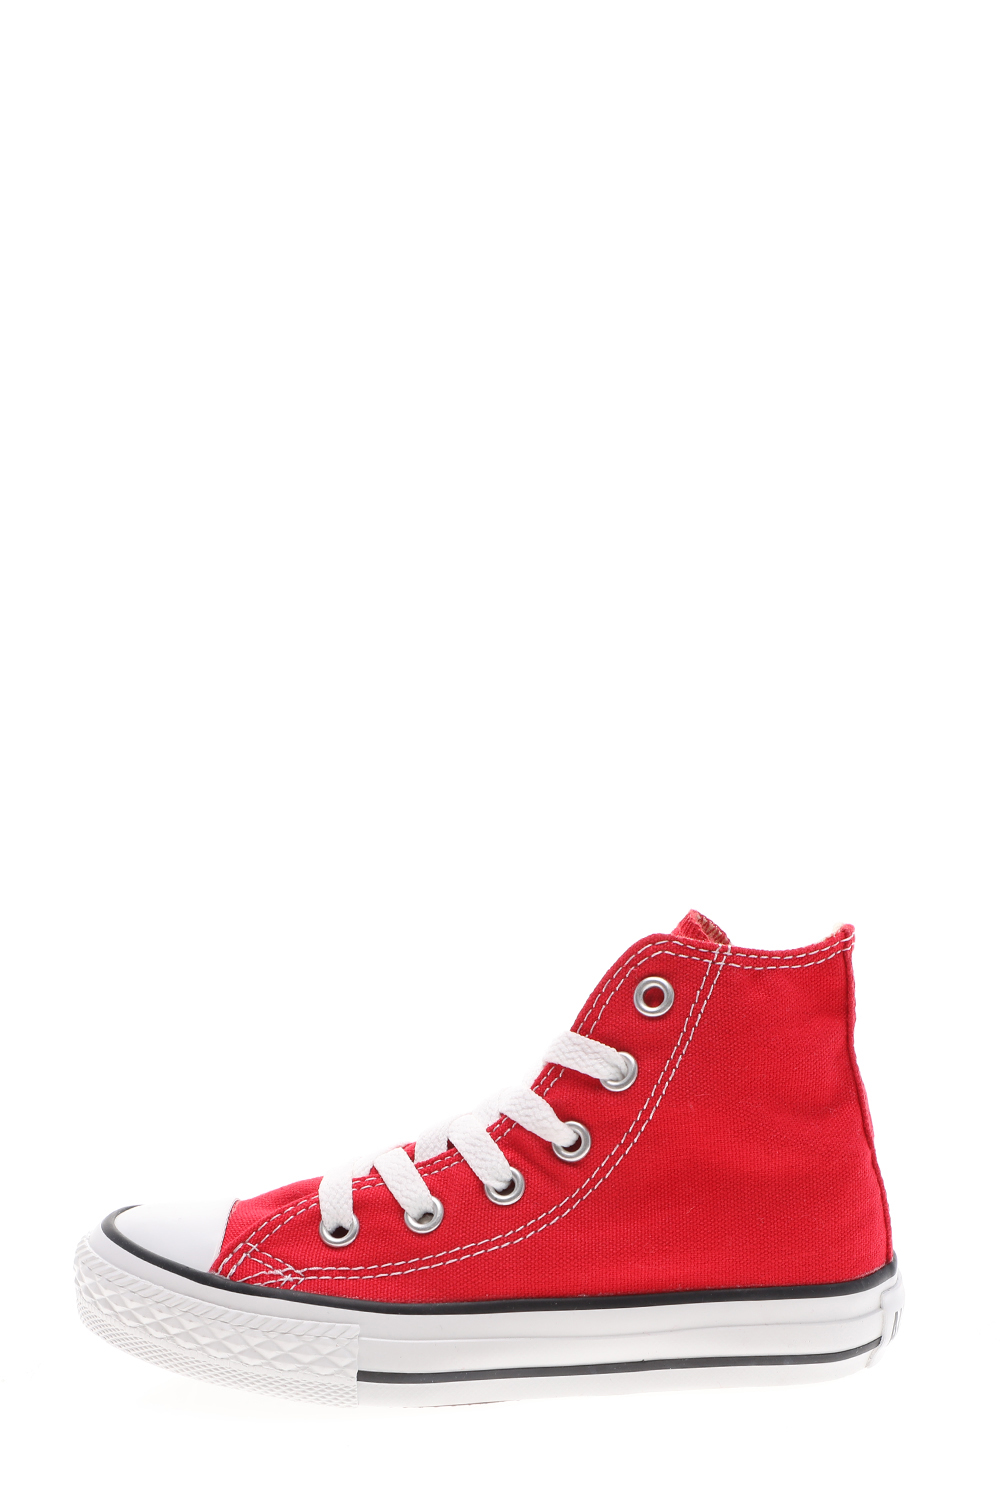 Παιδικά/Girls/Παπούτσια/Sneakers CONVERSE - Παιδικά sneakers Chuck Taylor AS Core HI κόκκινα